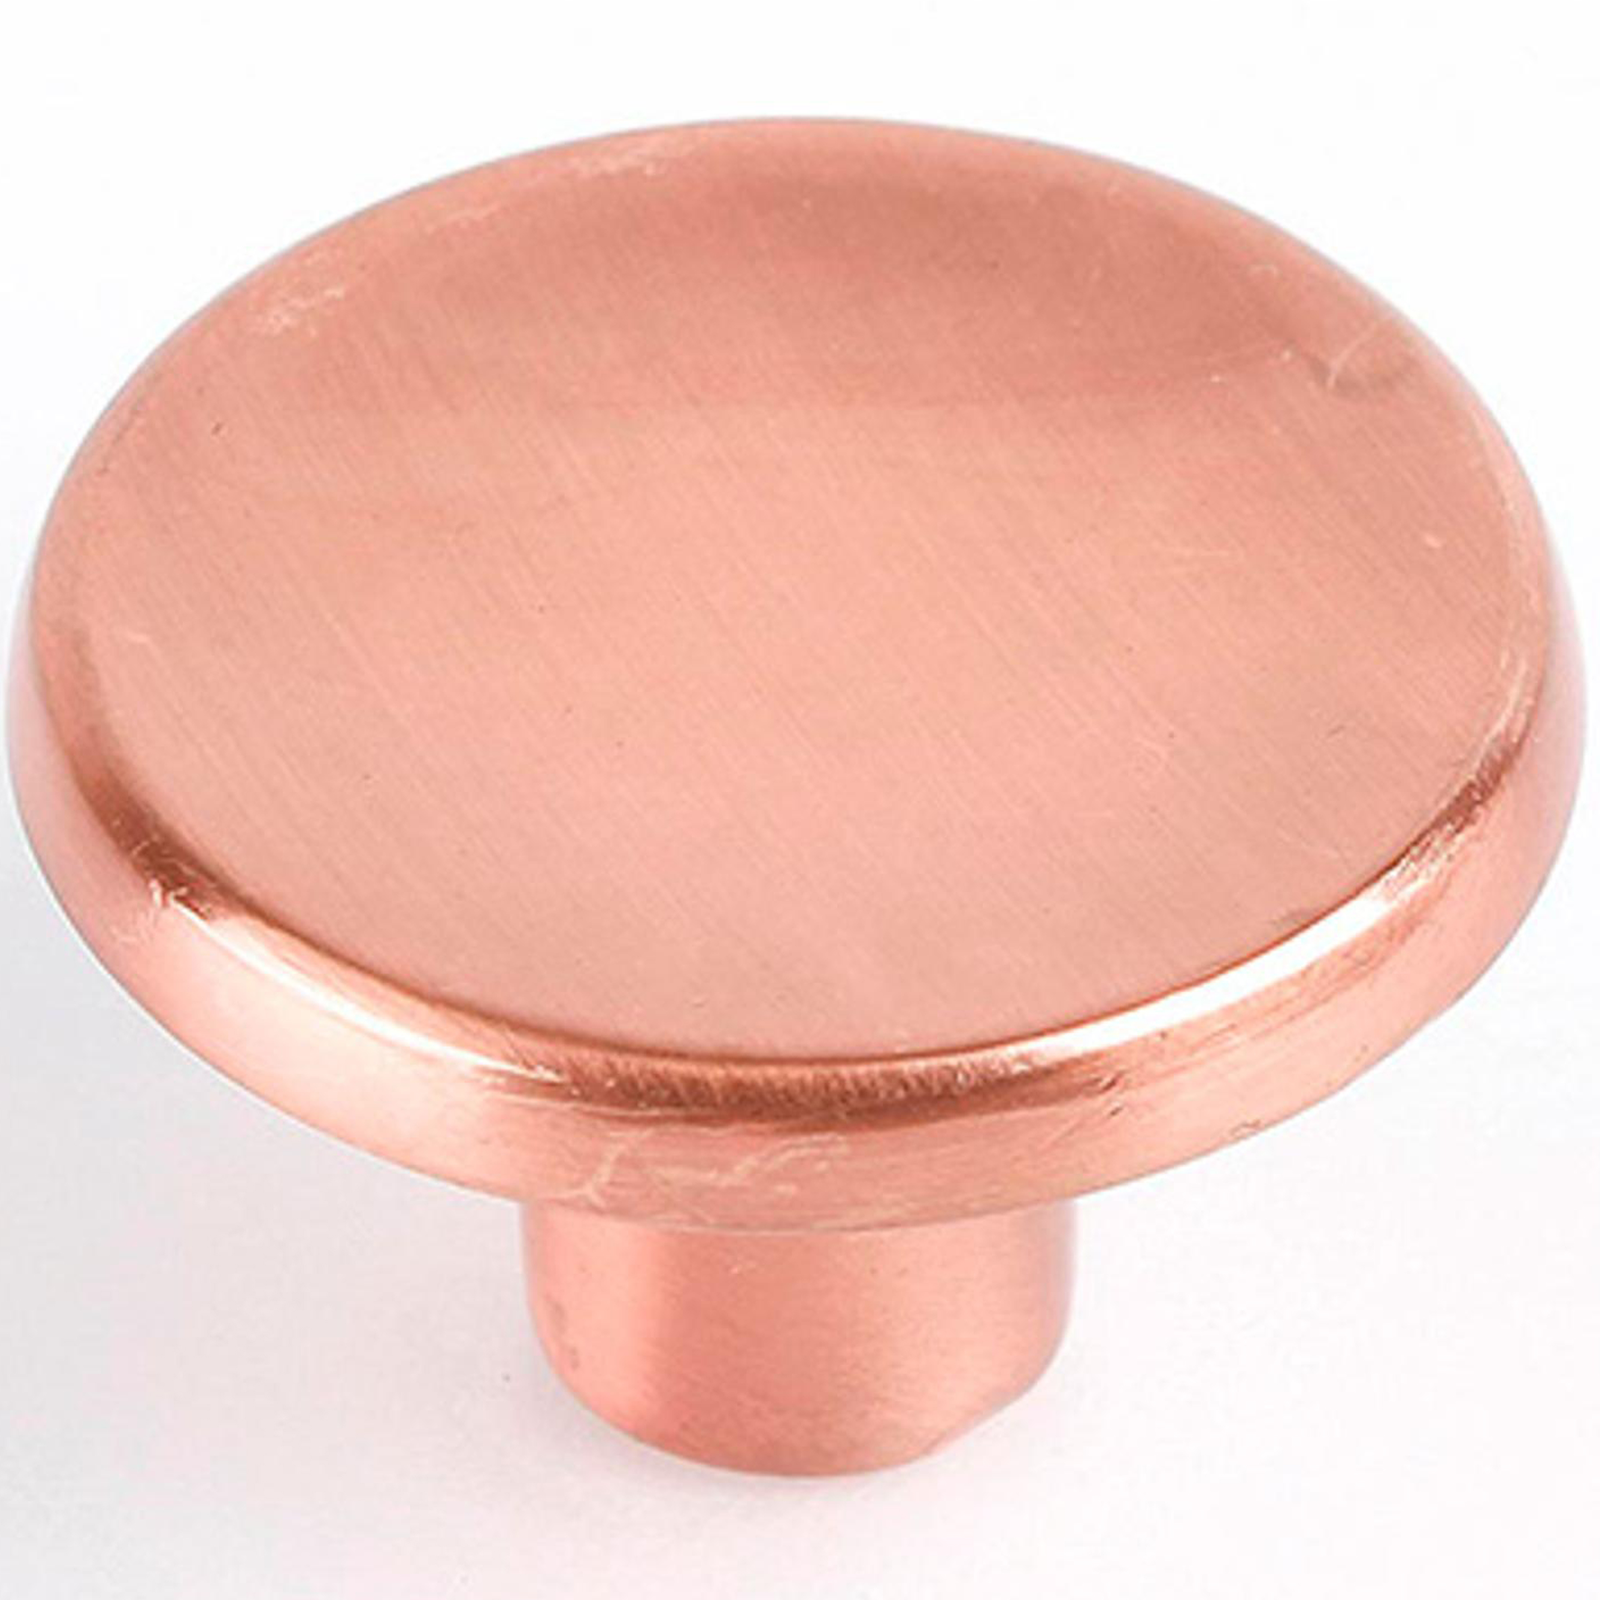 Confezione da 2 pomelli per mobili rotondi da 35x23 mm con viti in metallo  con finitura oro rosa opaco - Cablematic